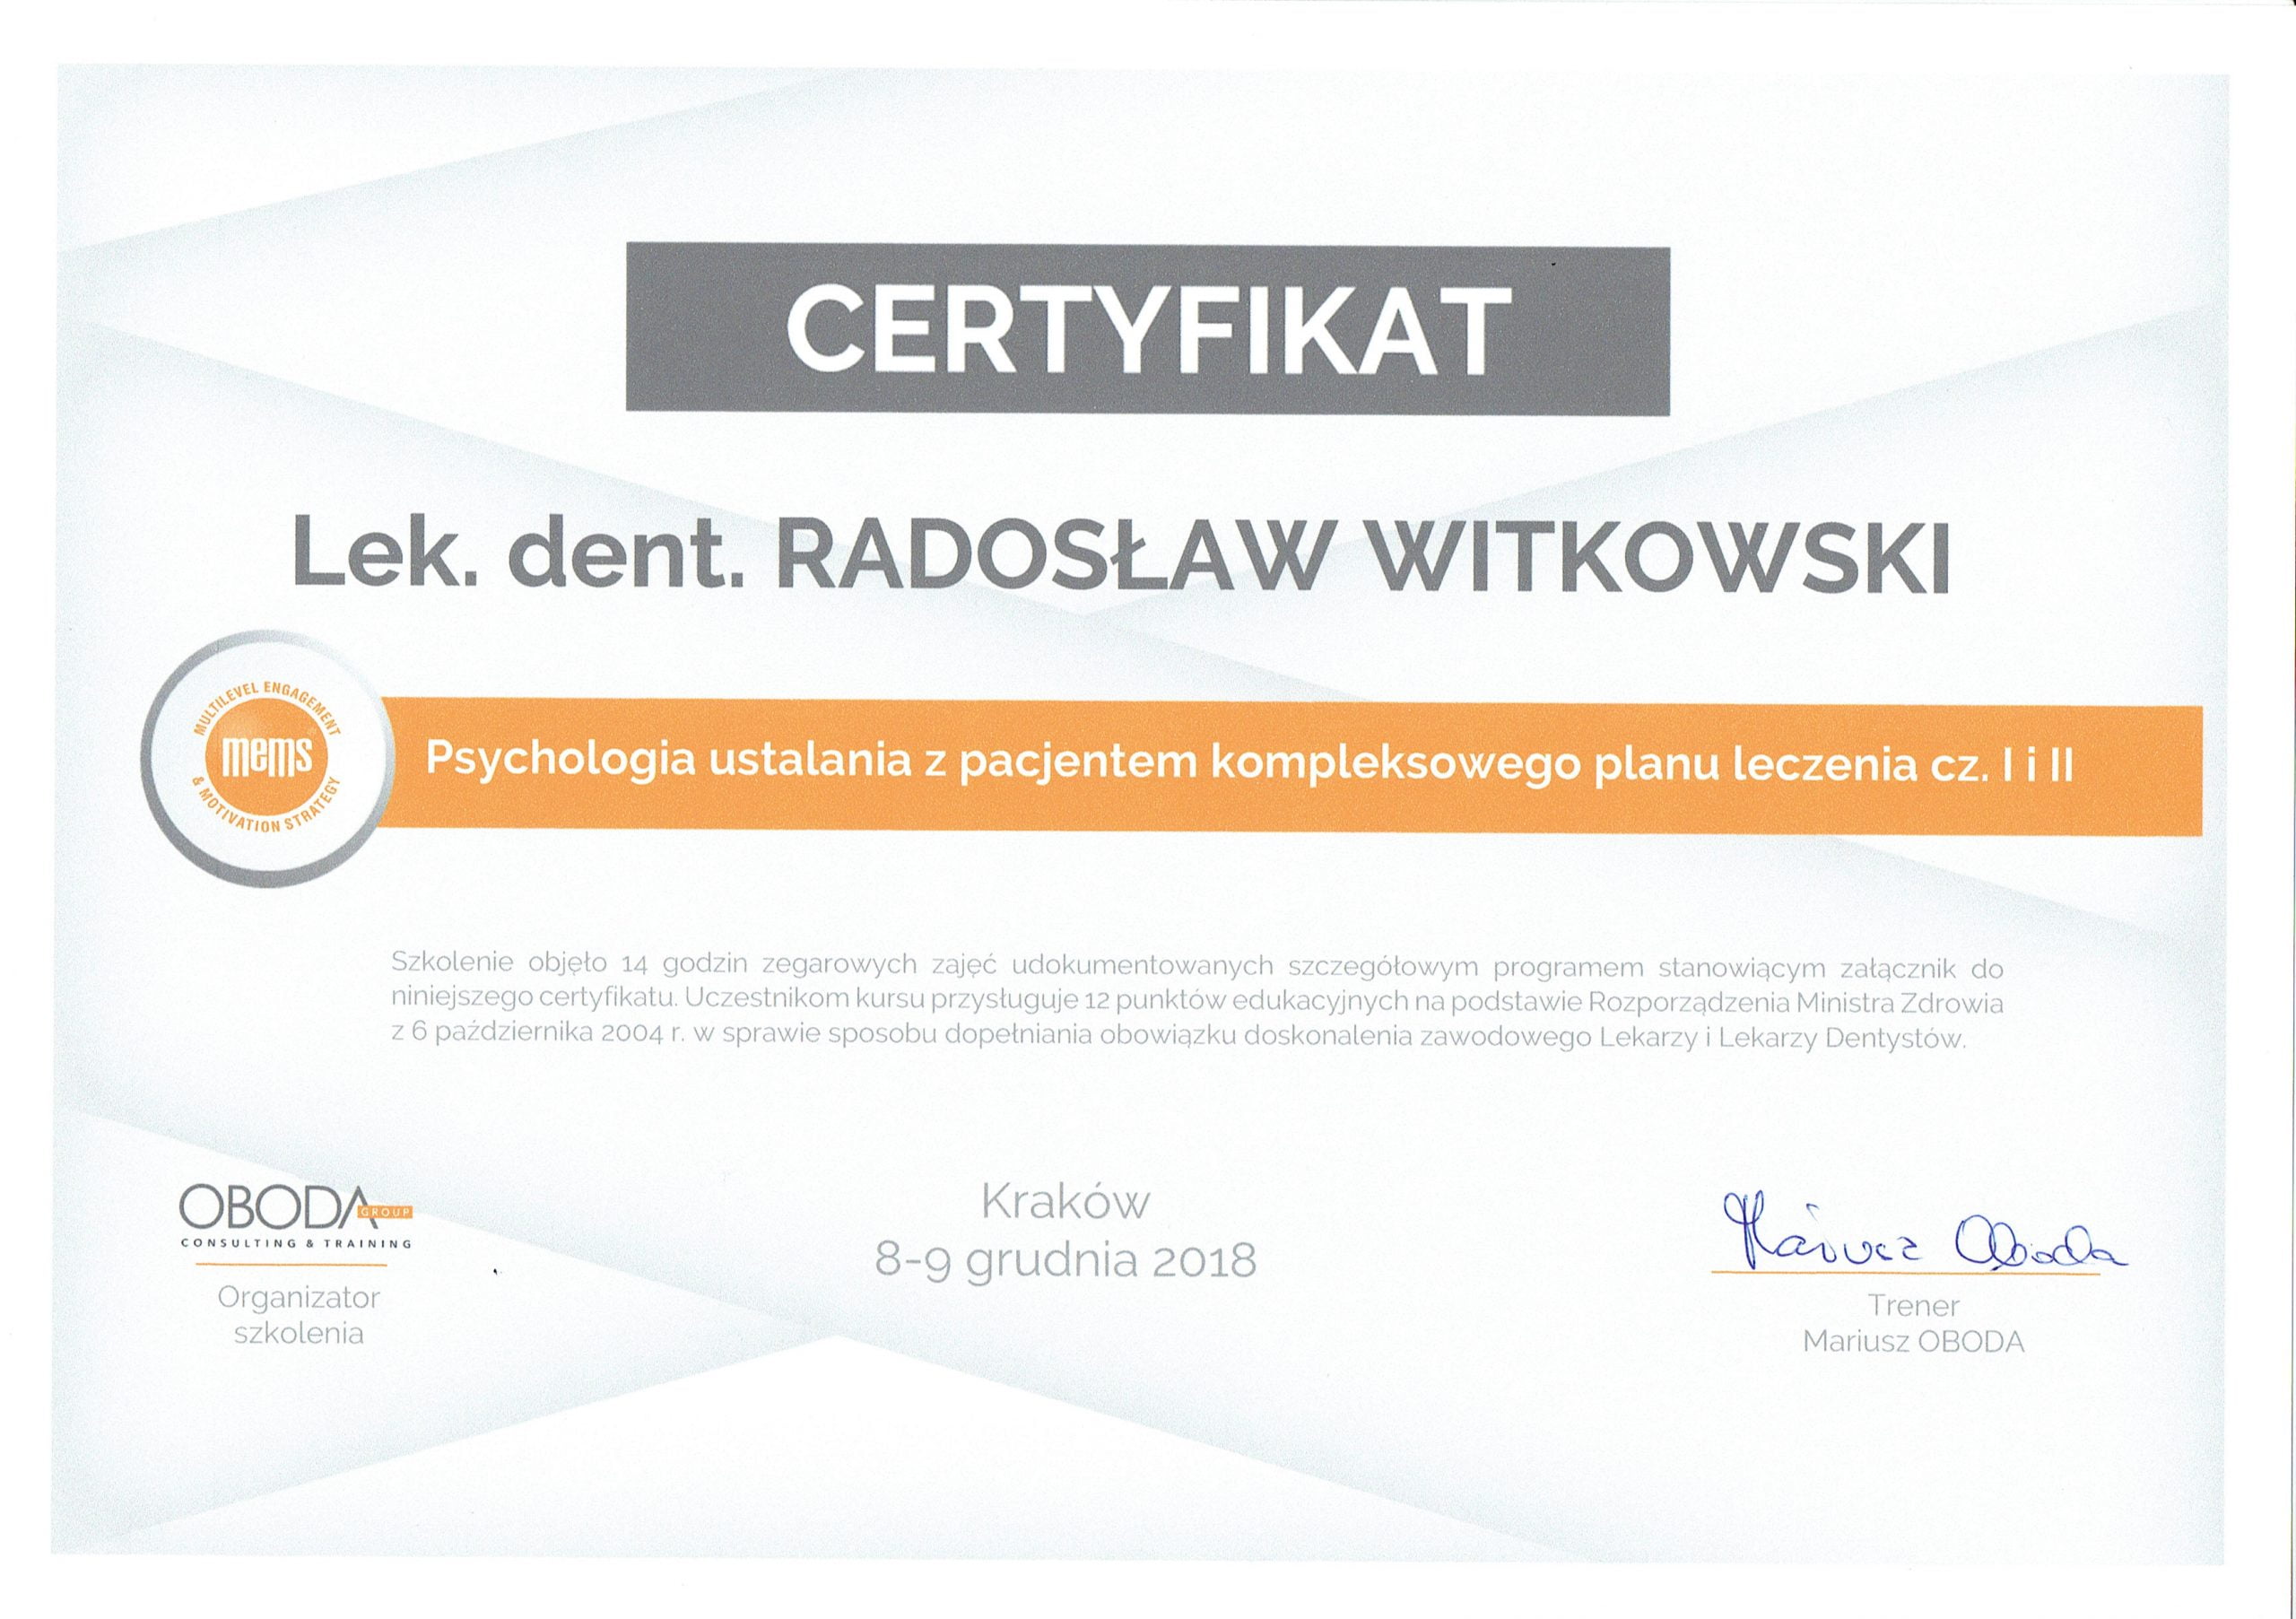 Radosław Witkowski certyfikat 121